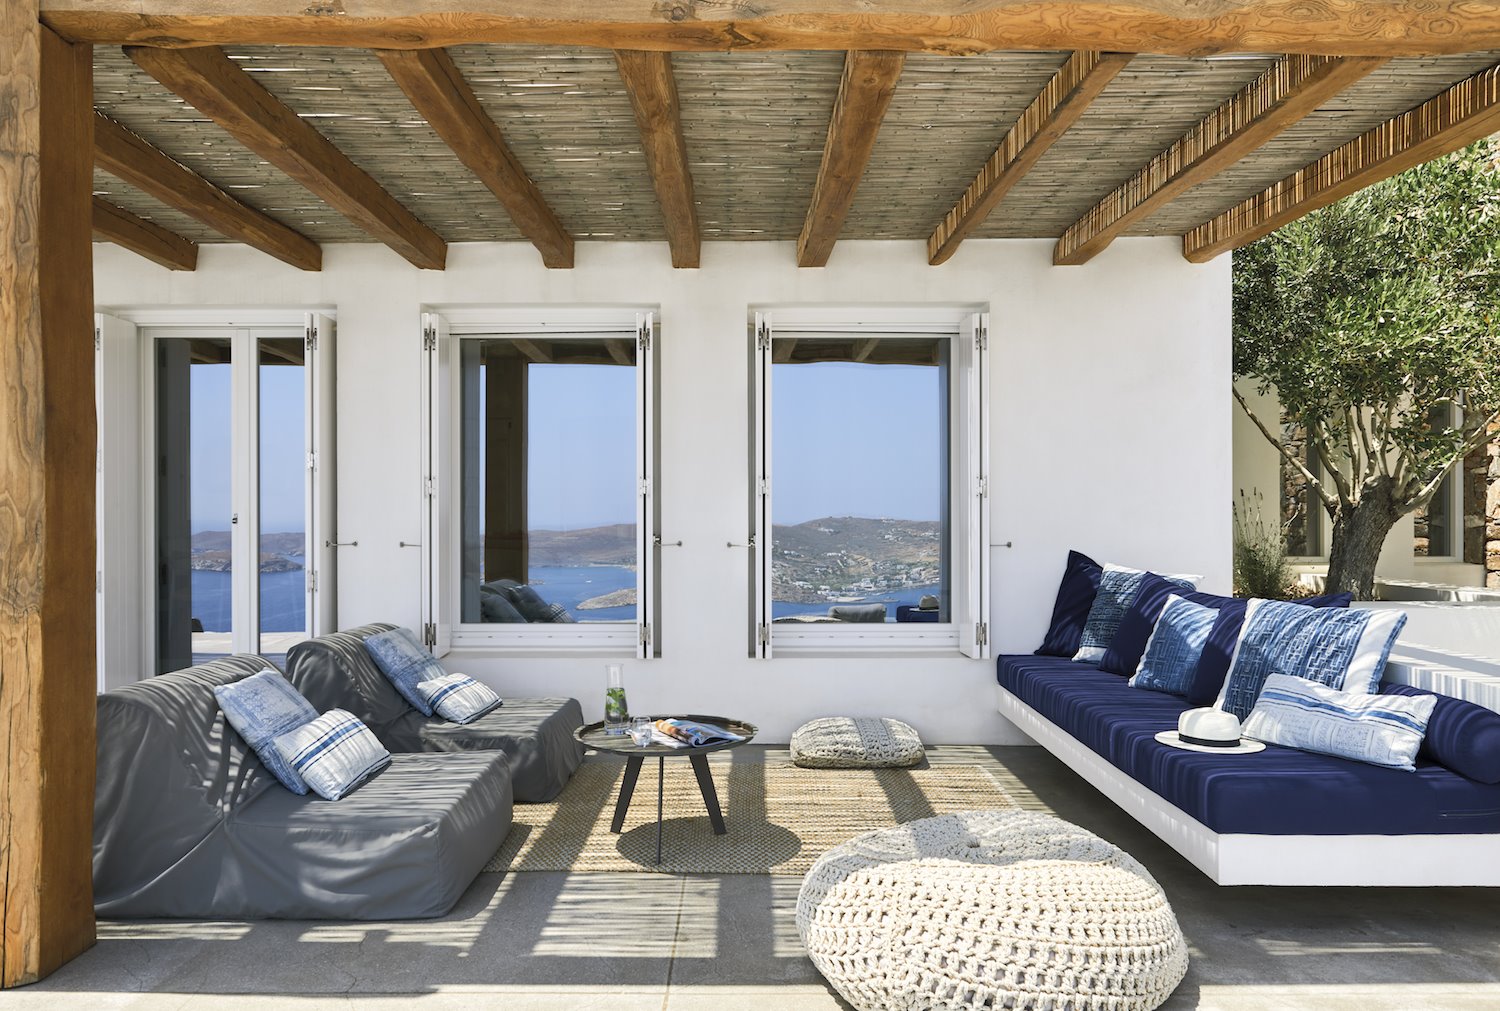 Terraza con cojines y sofas tapizas en color azul